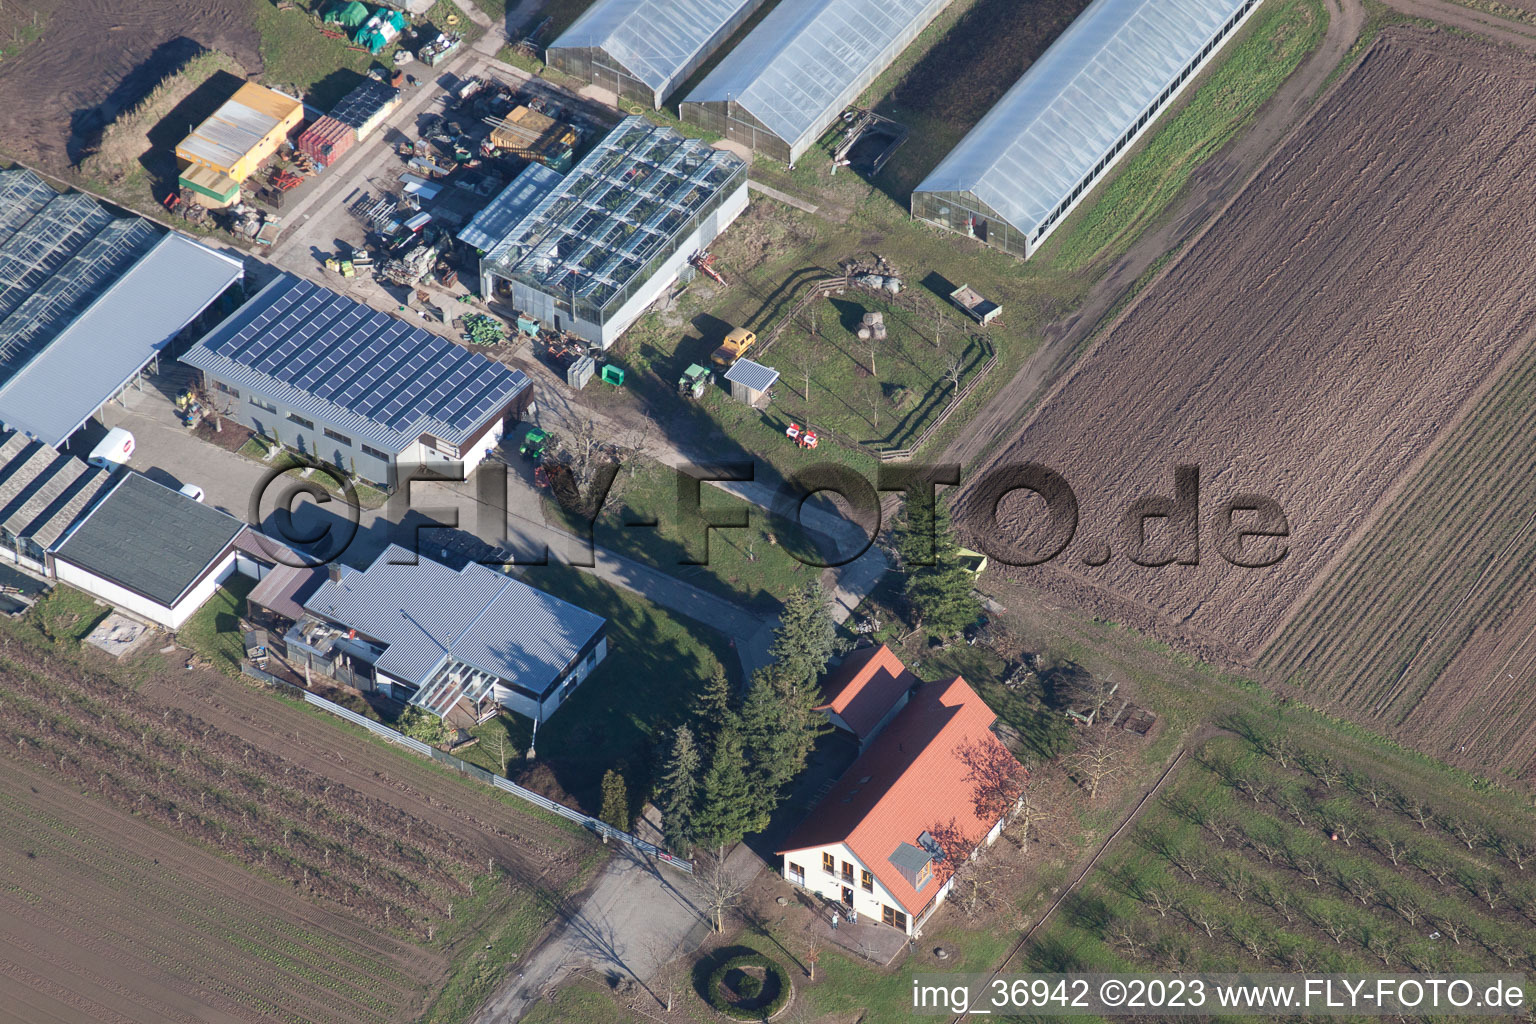 Gommersheim im Bundesland Rheinland-Pfalz, Deutschland von der Drohne aus gesehen